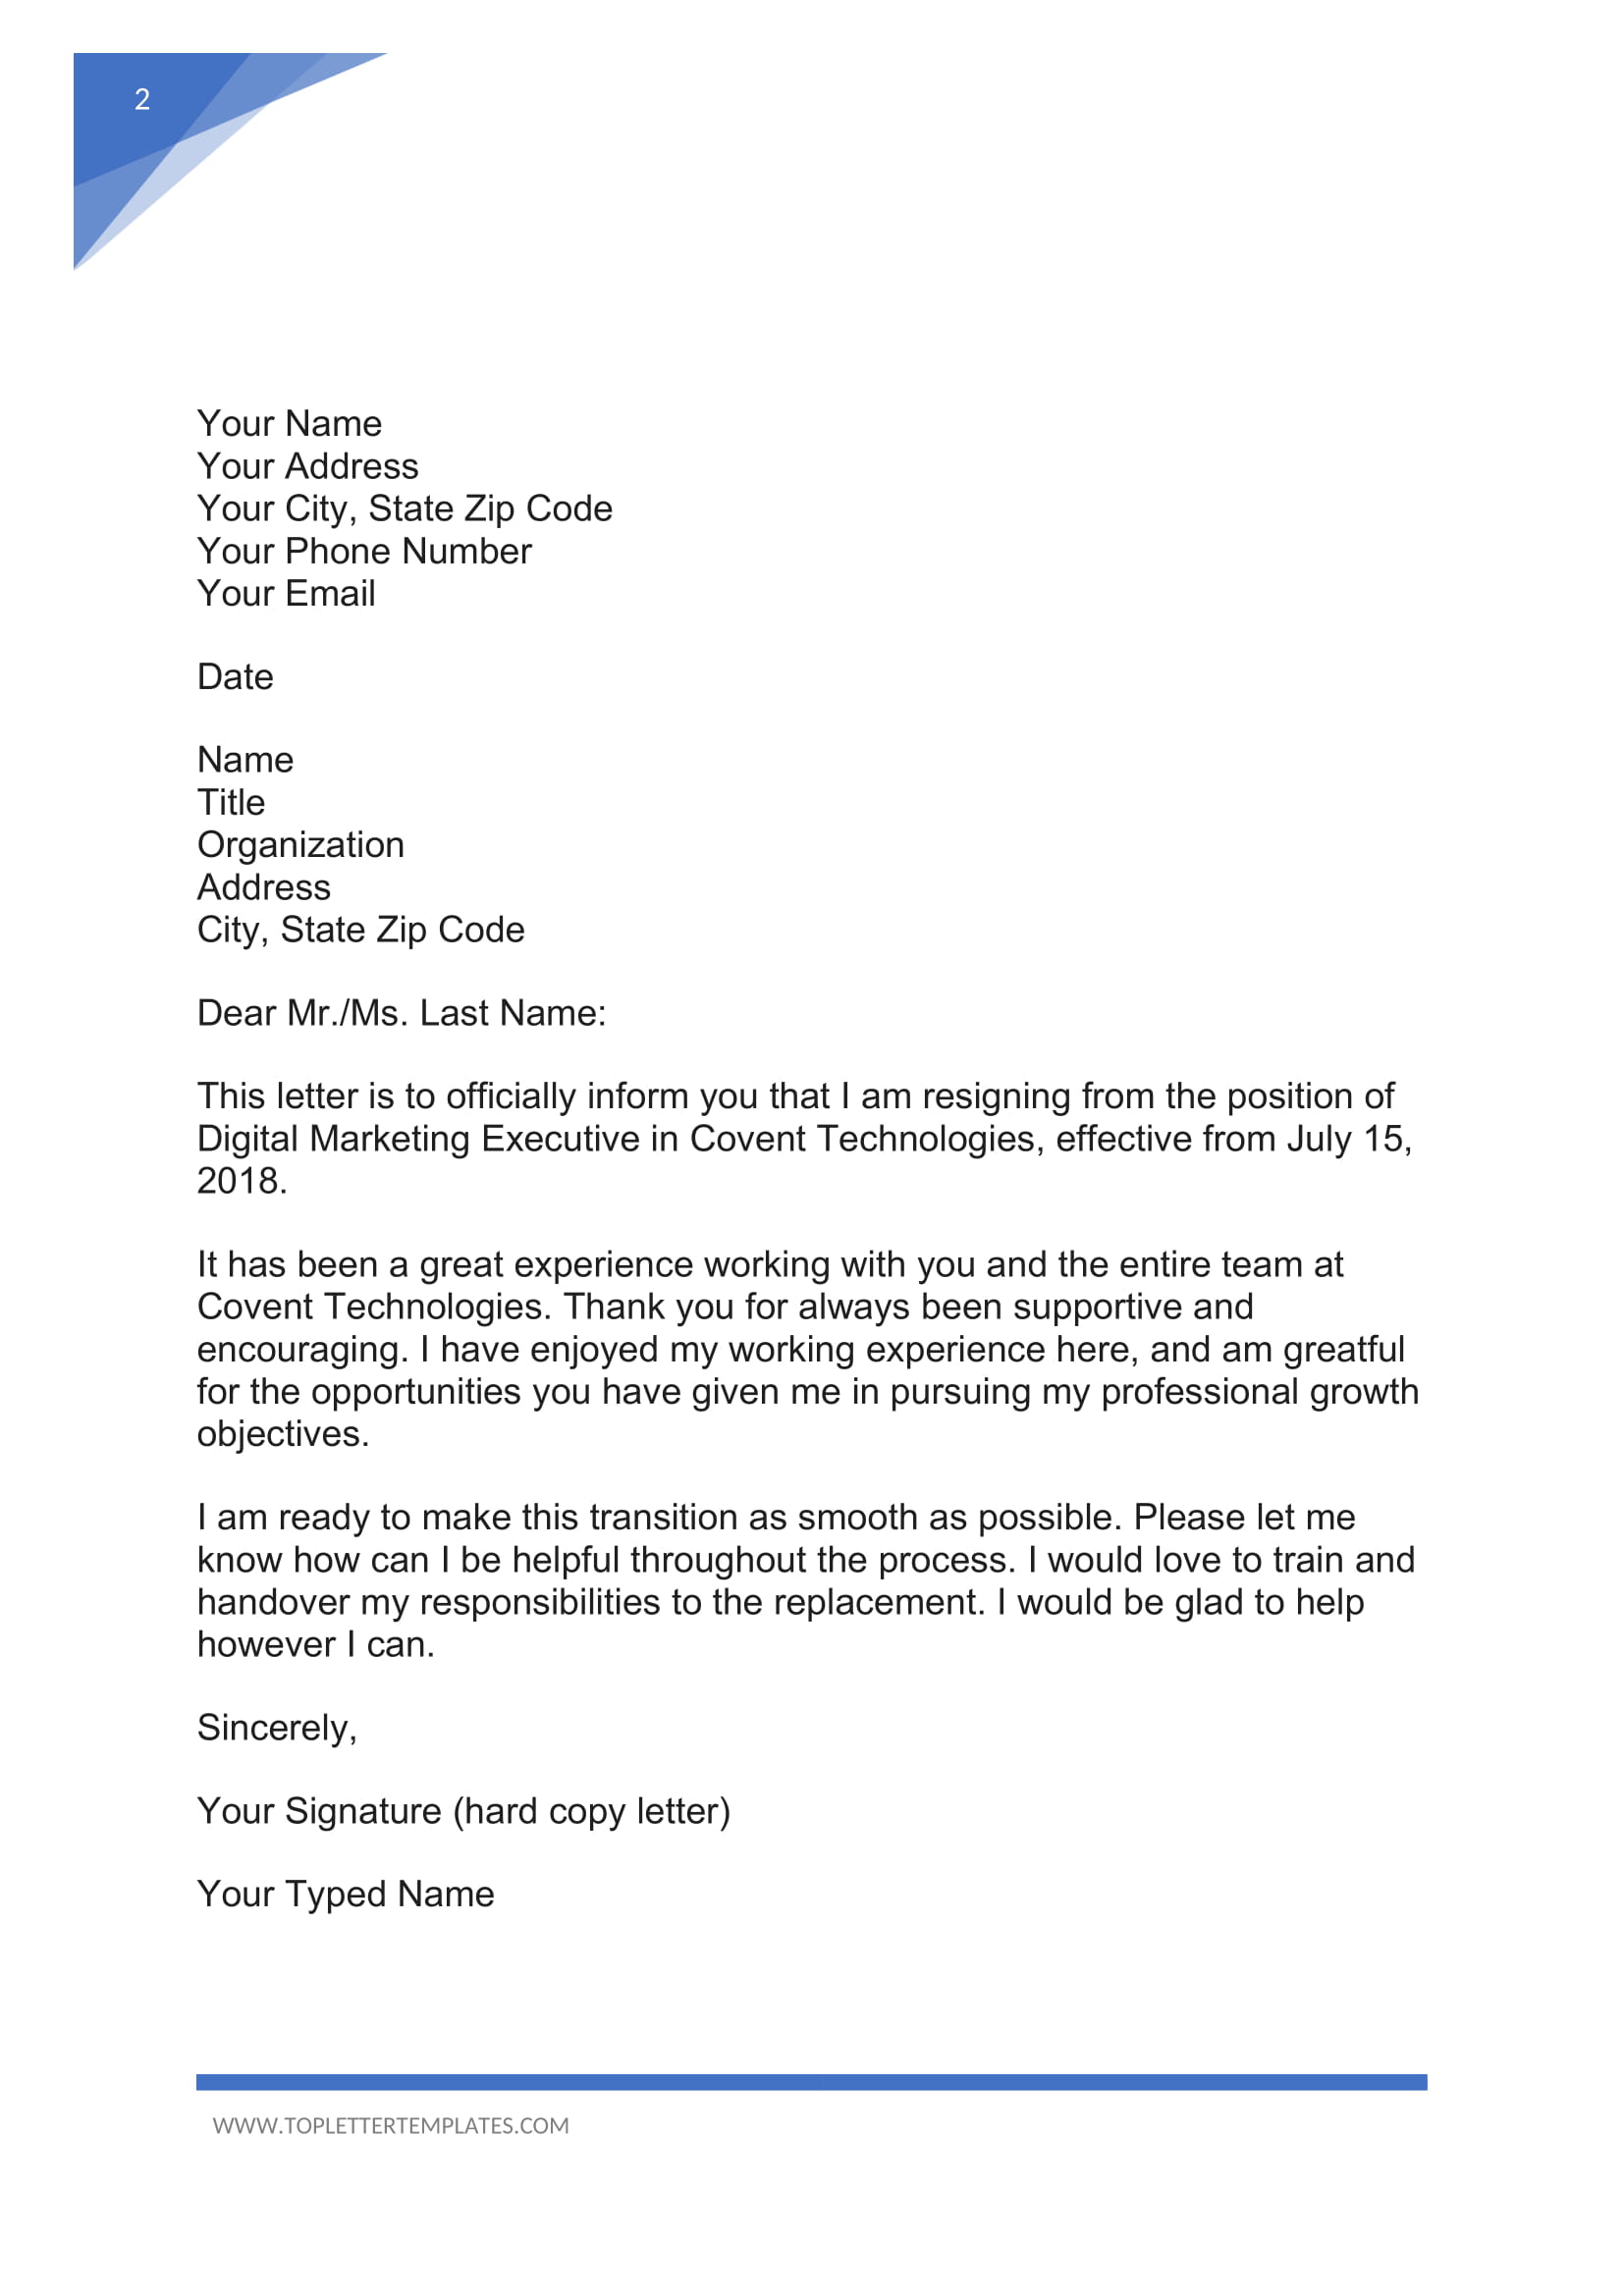 Formal Resign Letter For Work from toplettertemplates.com